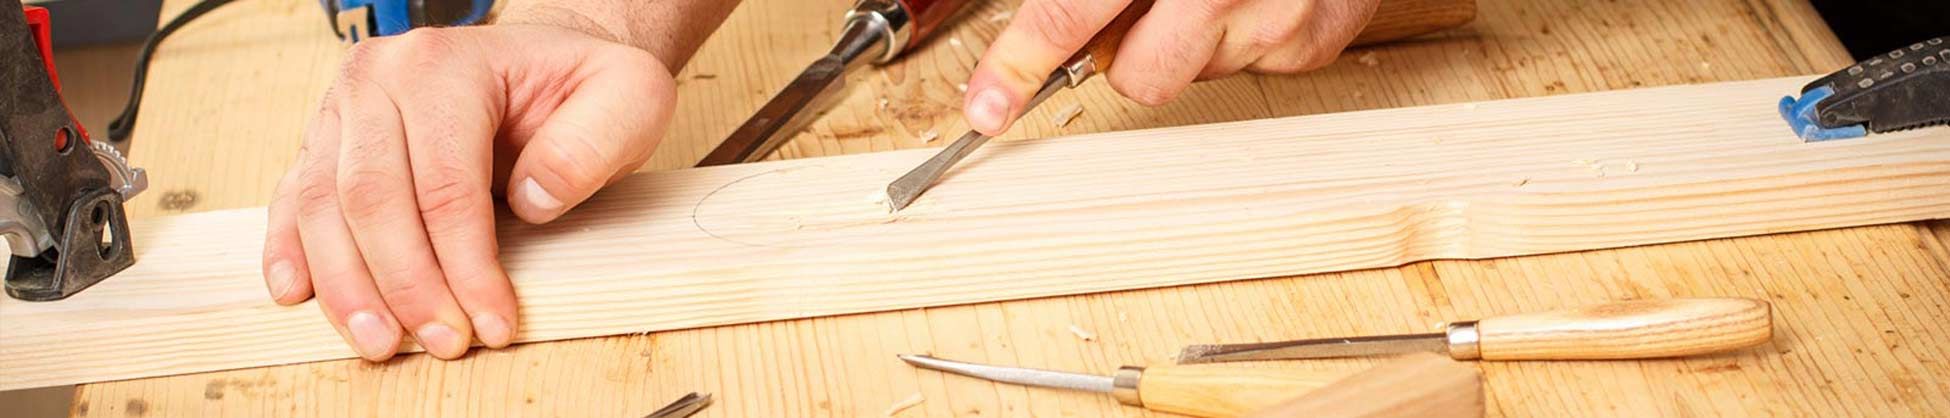 Carpintería de Madera Minaya persona trabajando madera